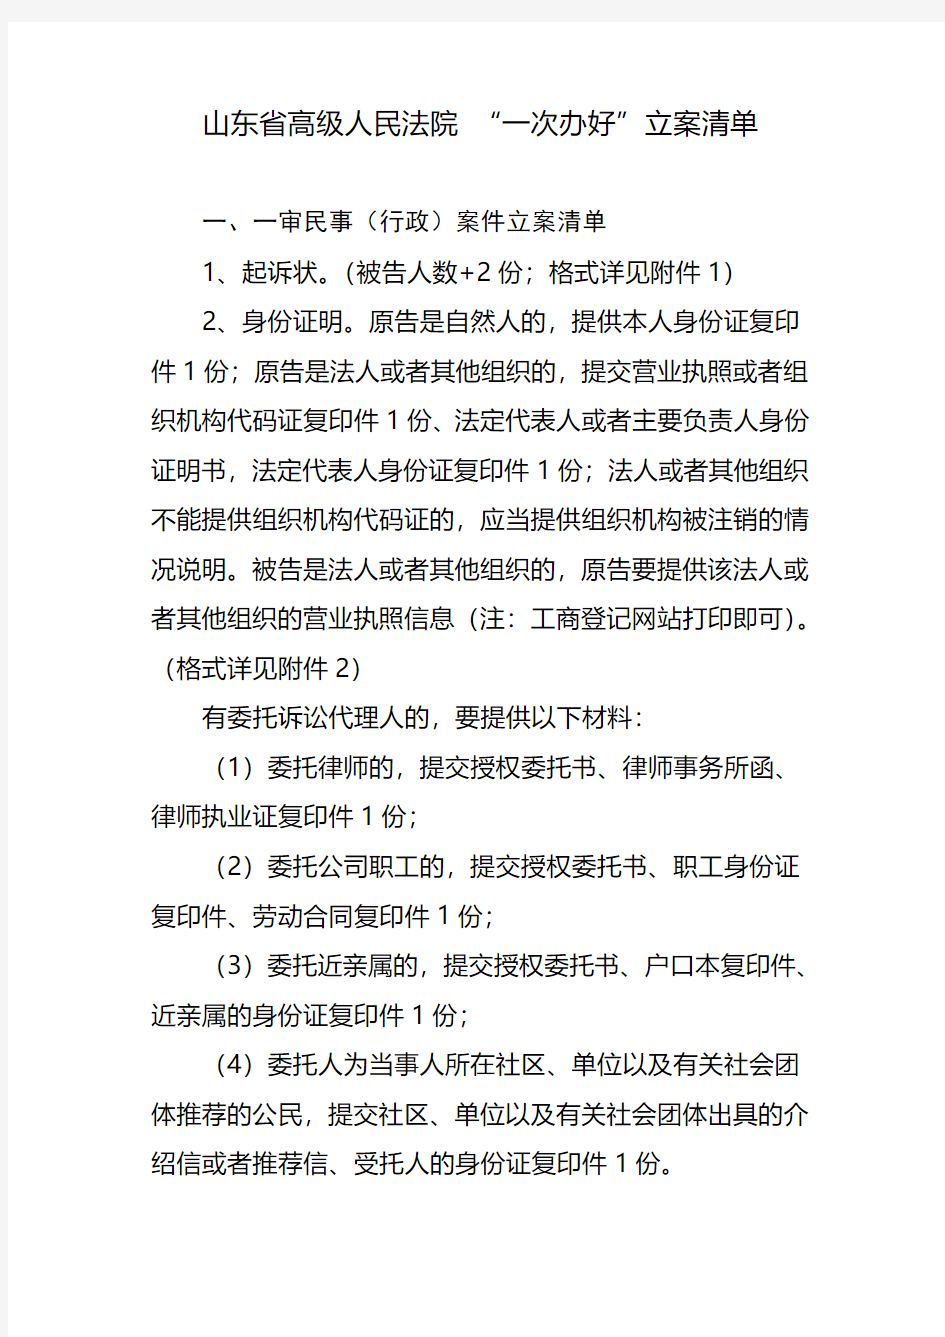 山东省高级人民法院立案清单